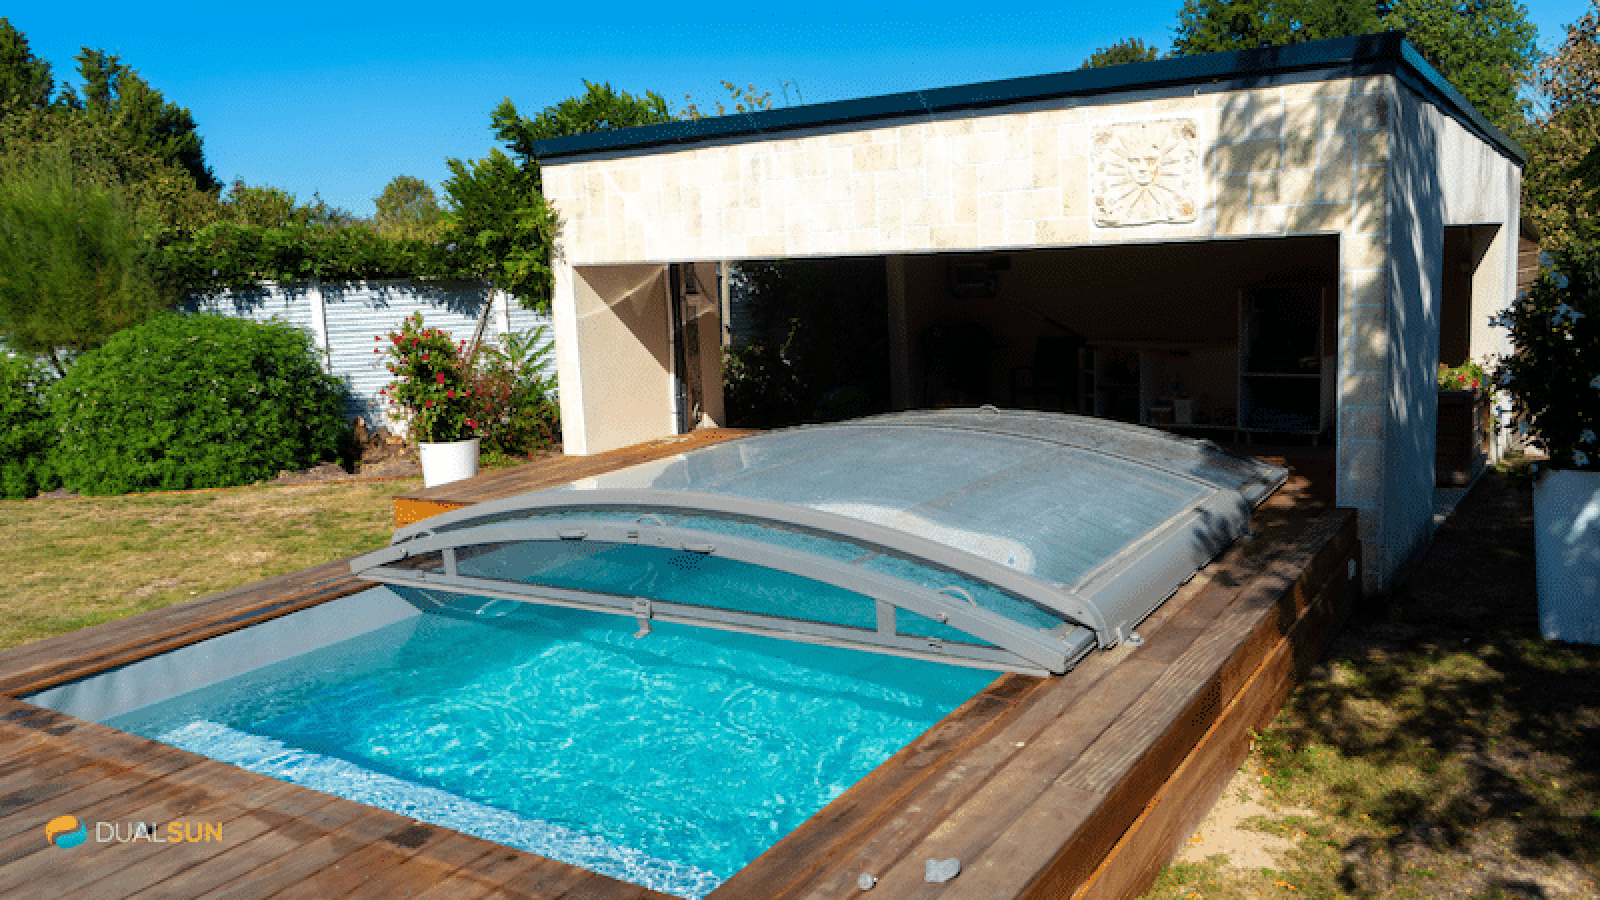 cugand-panneau-solaire-pvt-dualsun-piscine